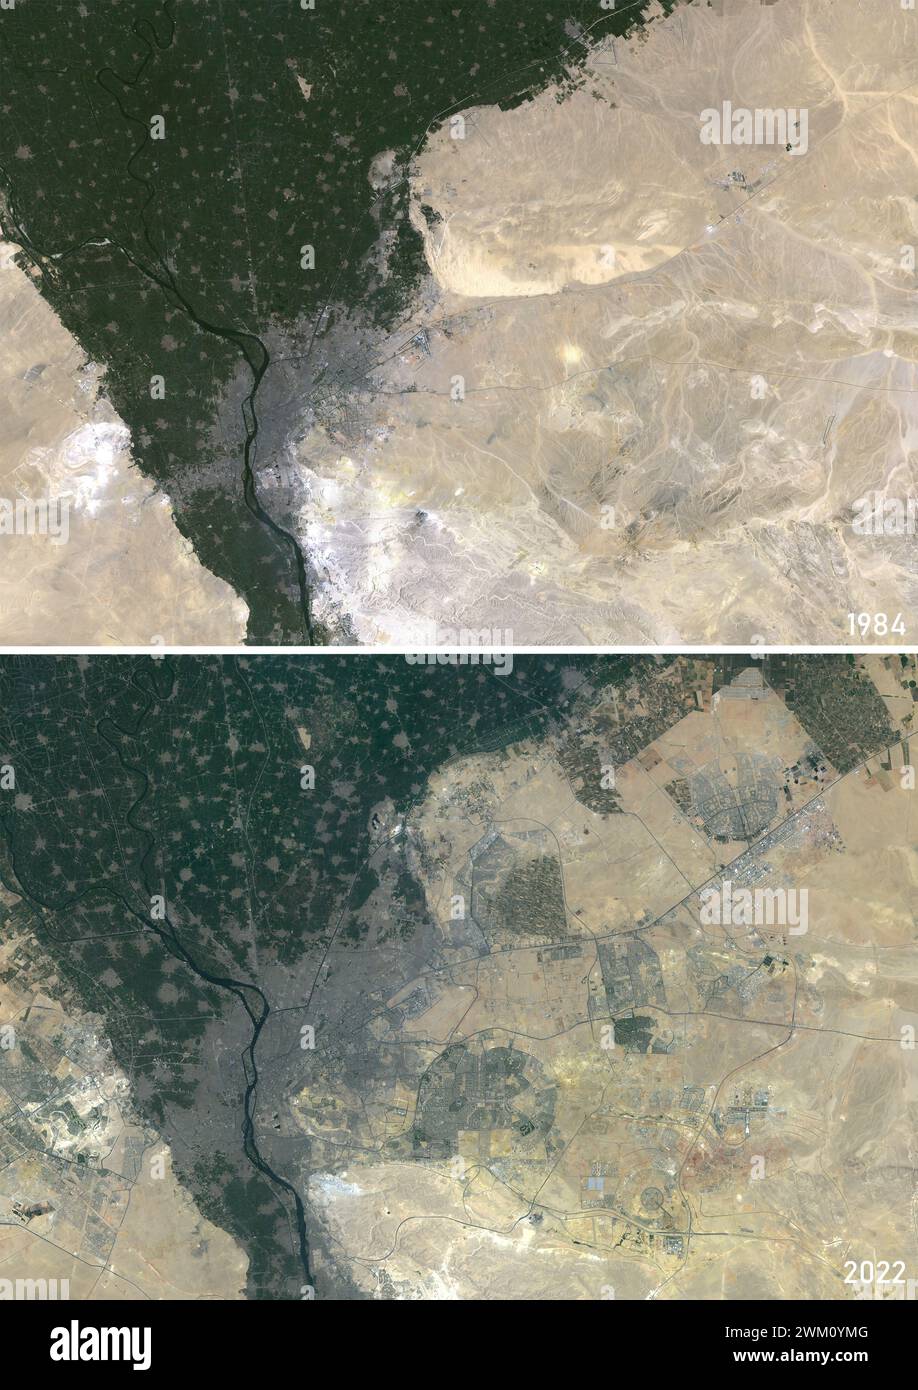 Immagine satellitare a colori del Cairo, Egitto nel 1984 e 2022. L'immagine del 2022 include la città del Cairo di recente costruzione. Foto Stock